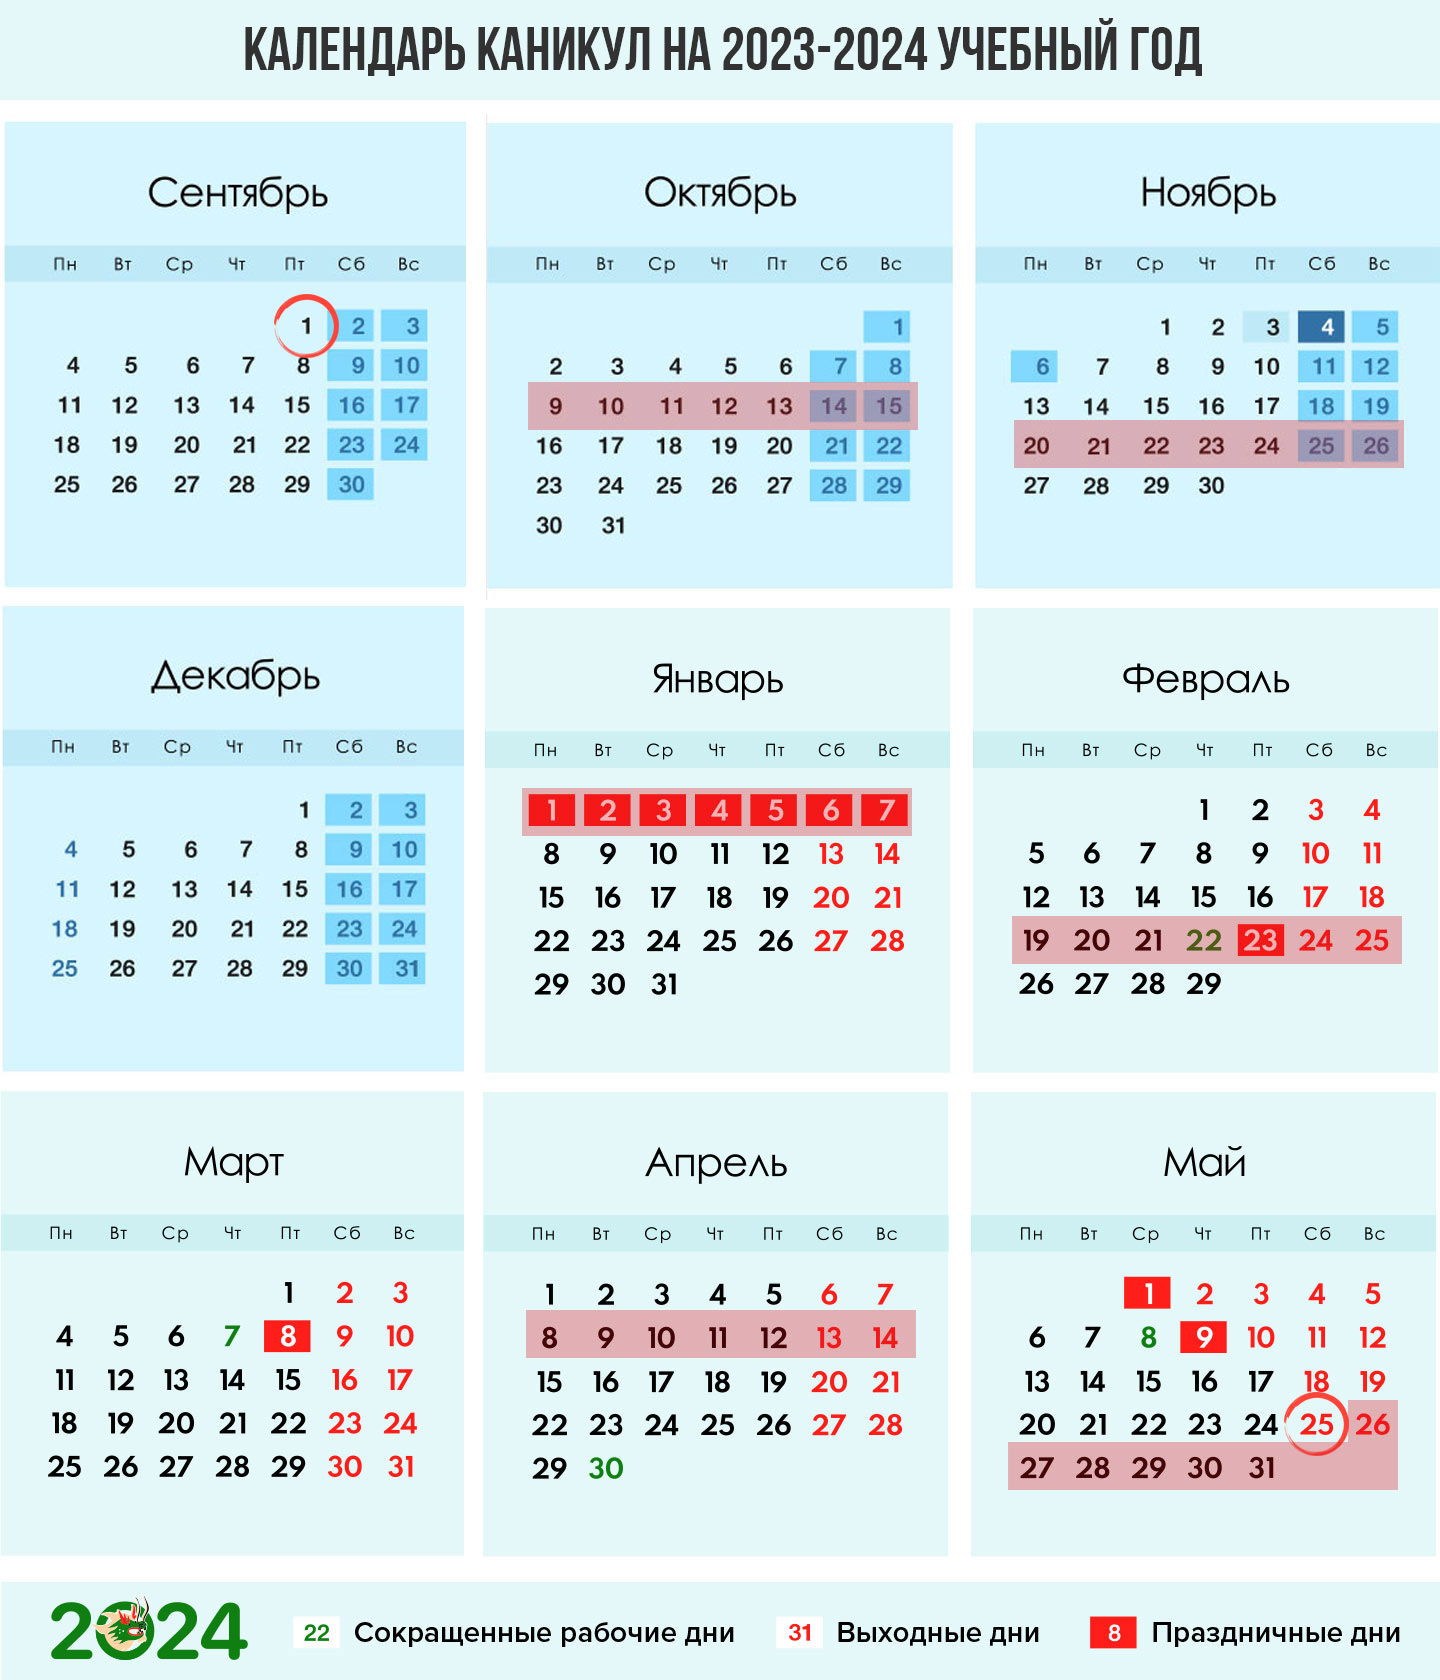 Календарь каникул для четветриместров на 2023-2024 учебный год